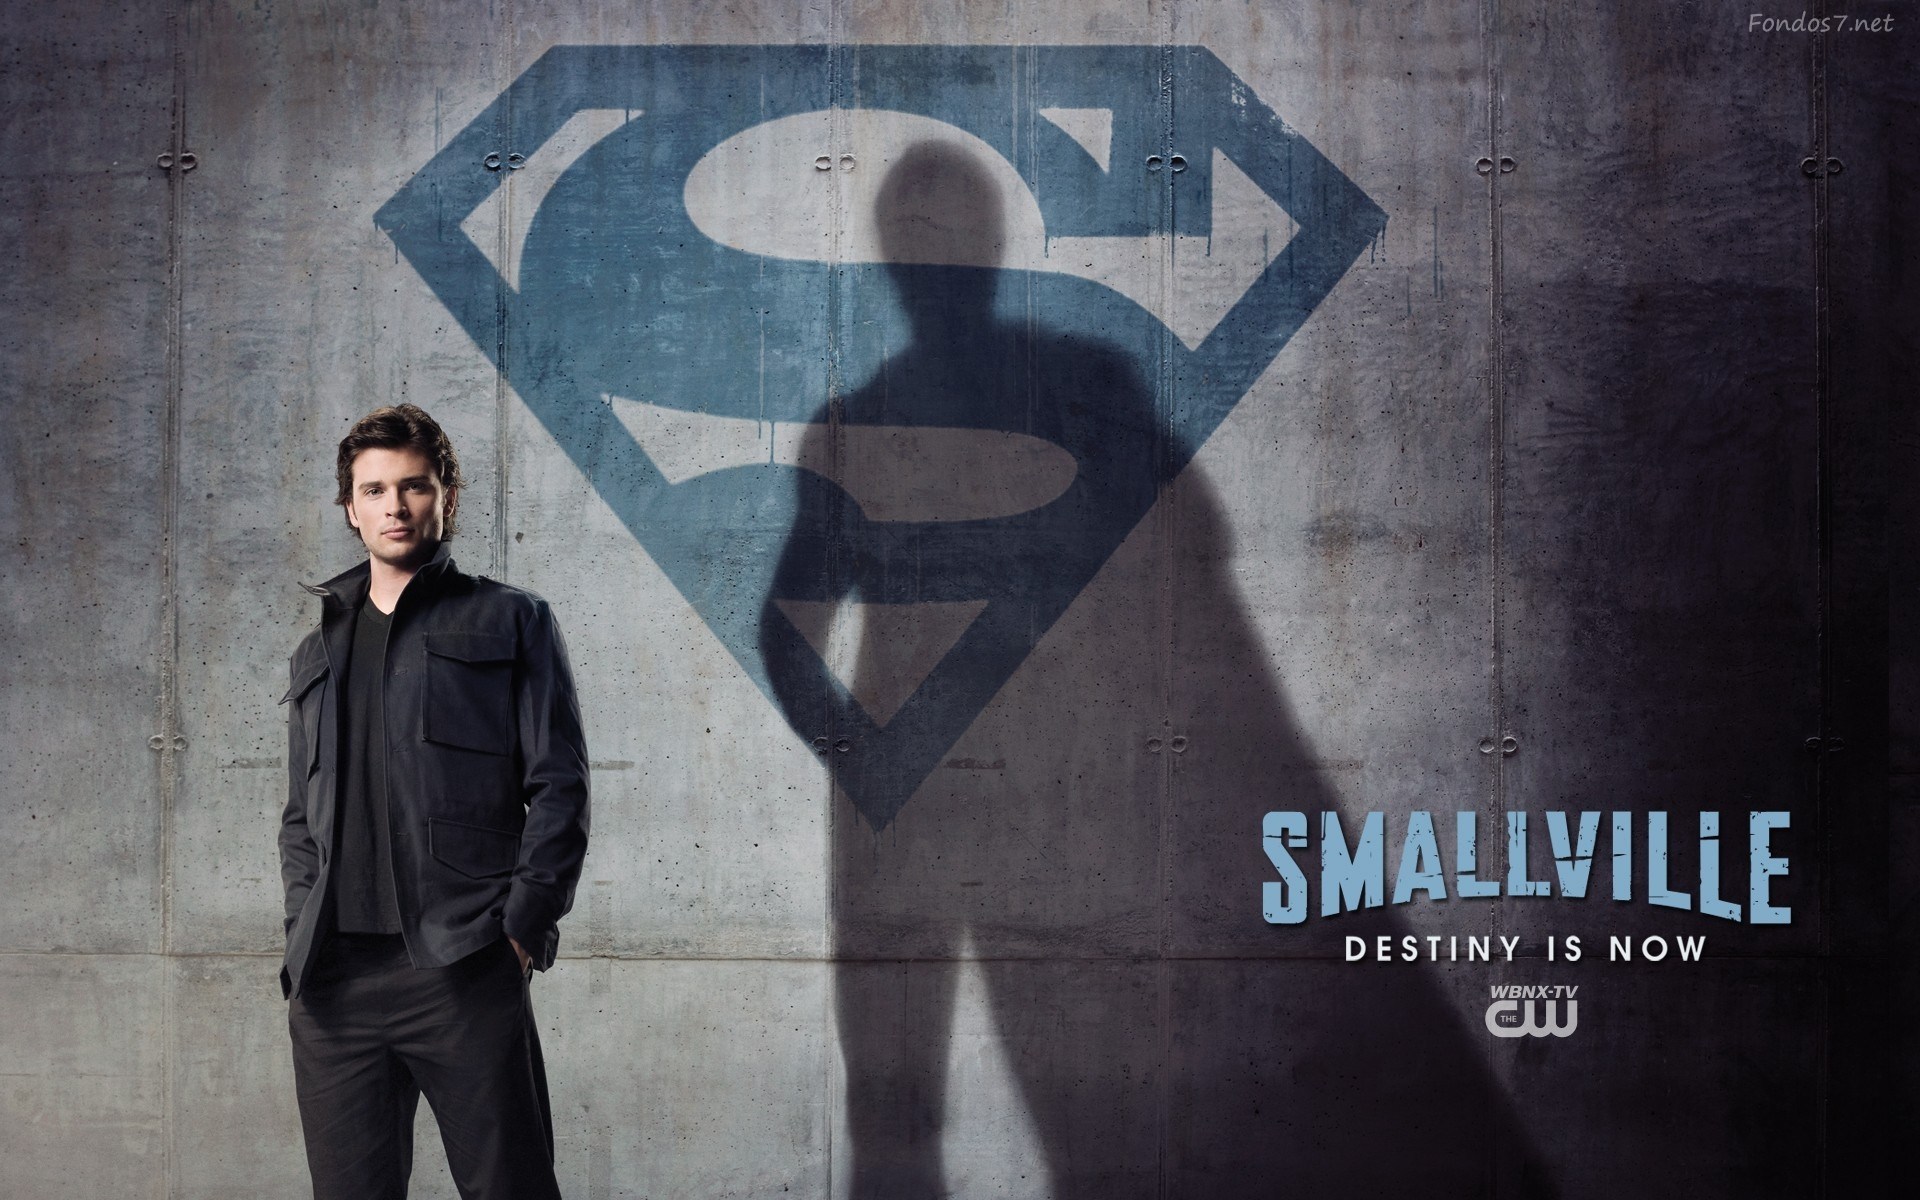 Smallville s06 720p blueray full